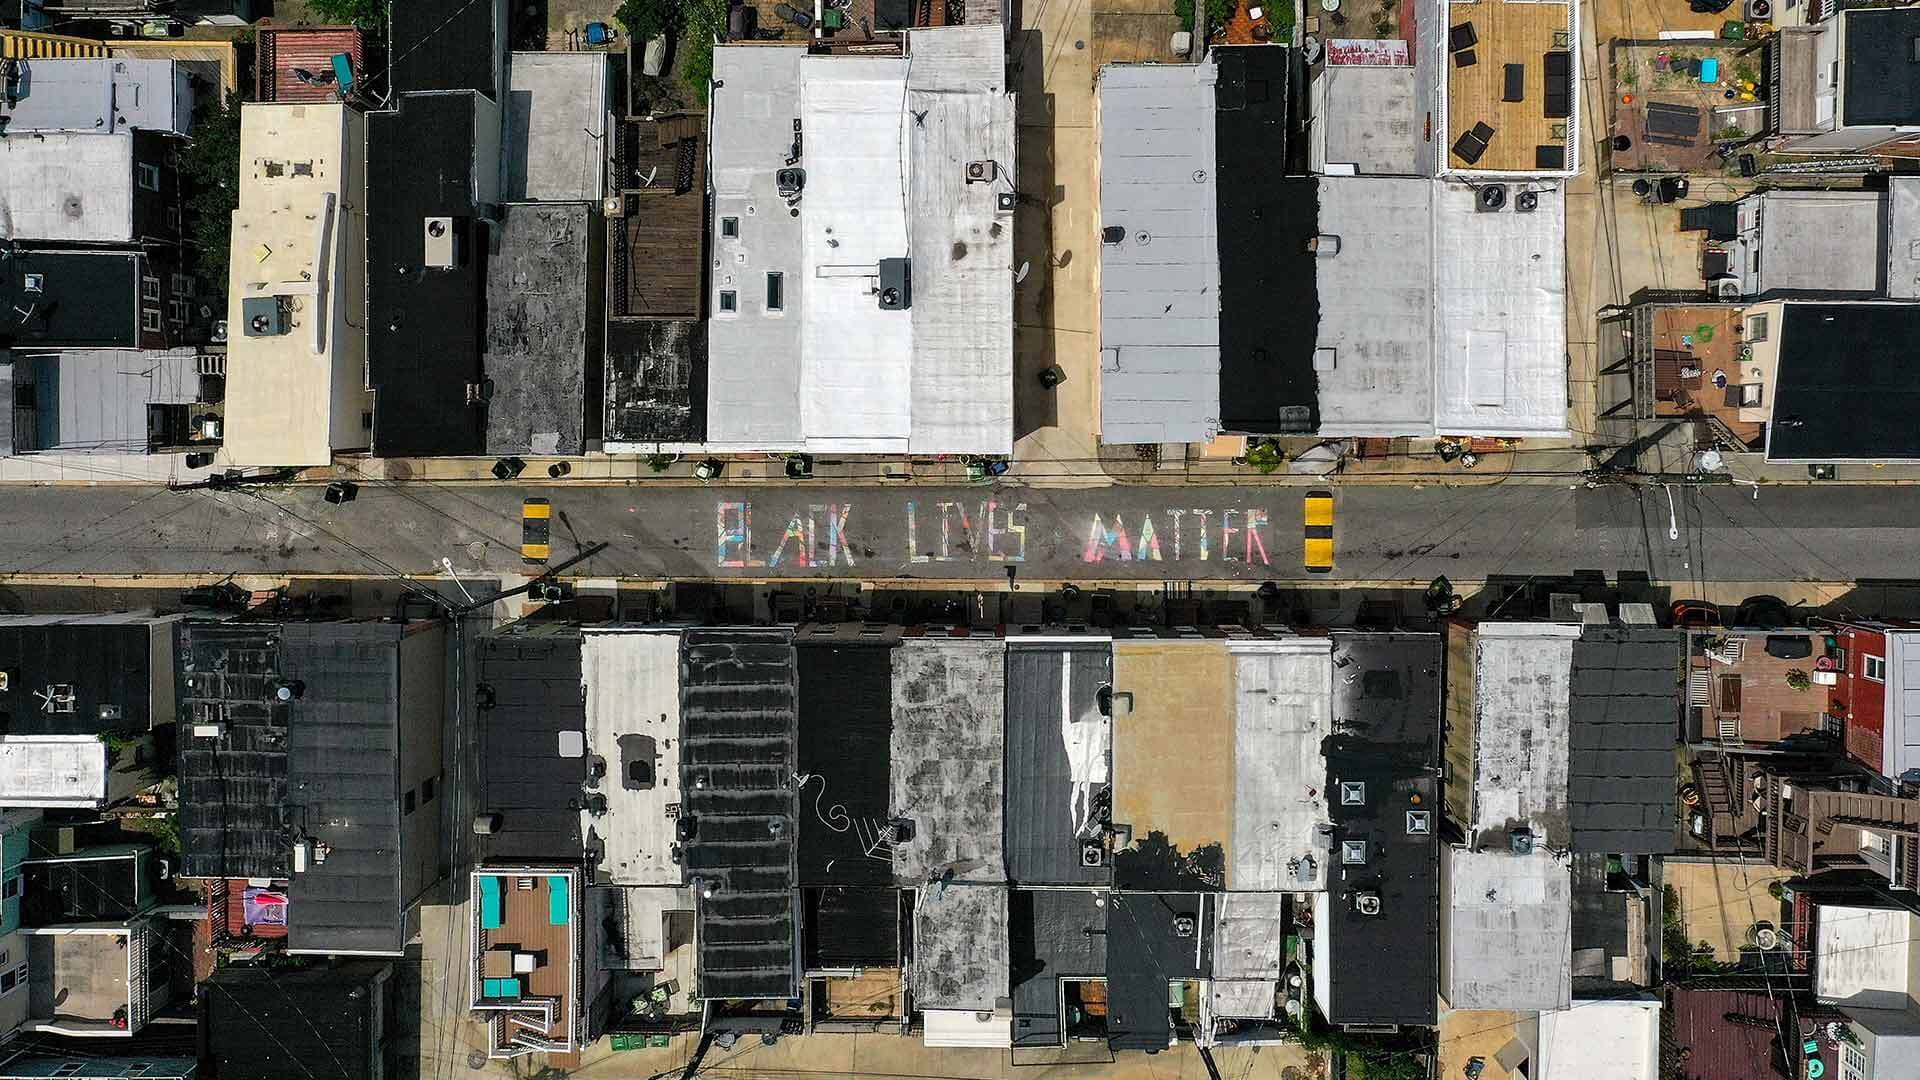 Black Lives Matter mural on street in Baltimore